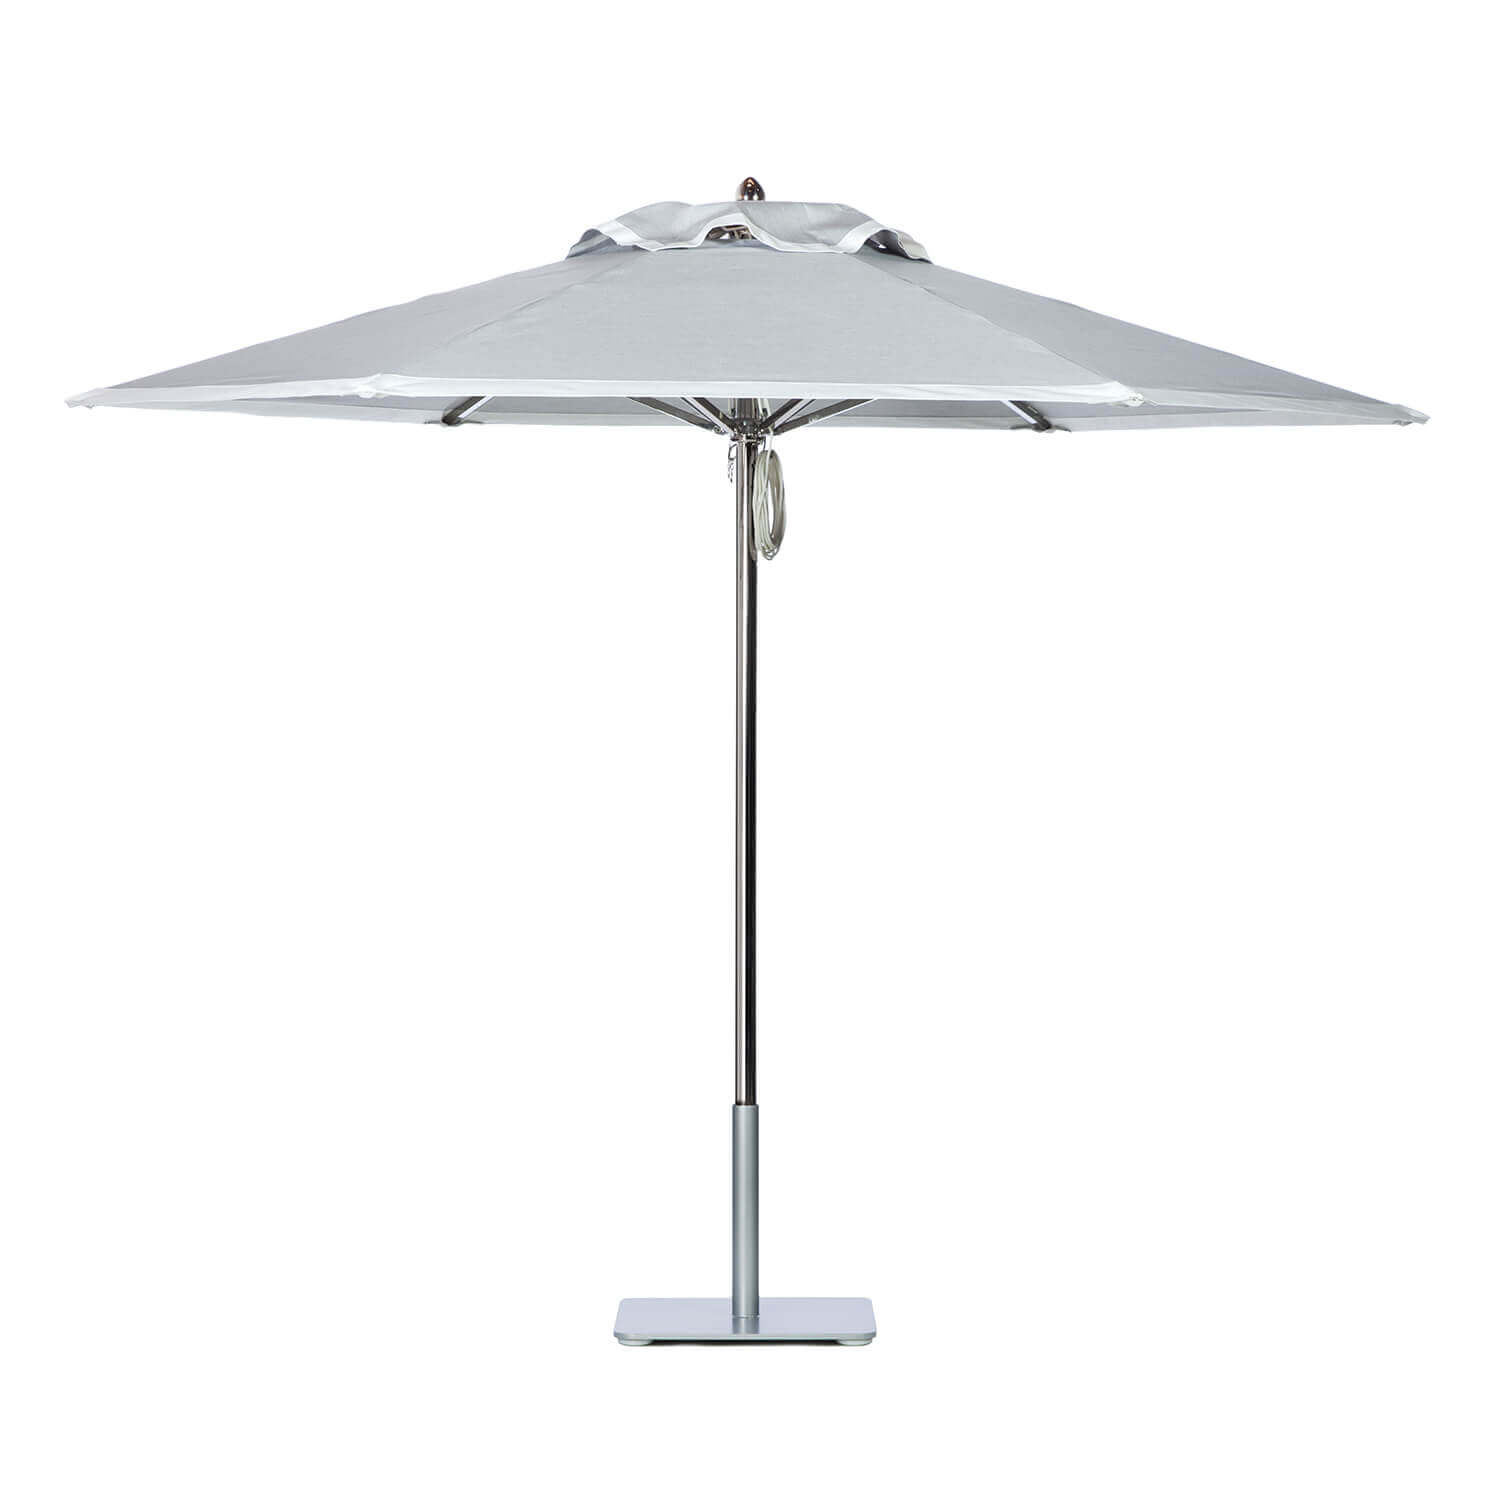 Tweedy Ash Umbrella Image